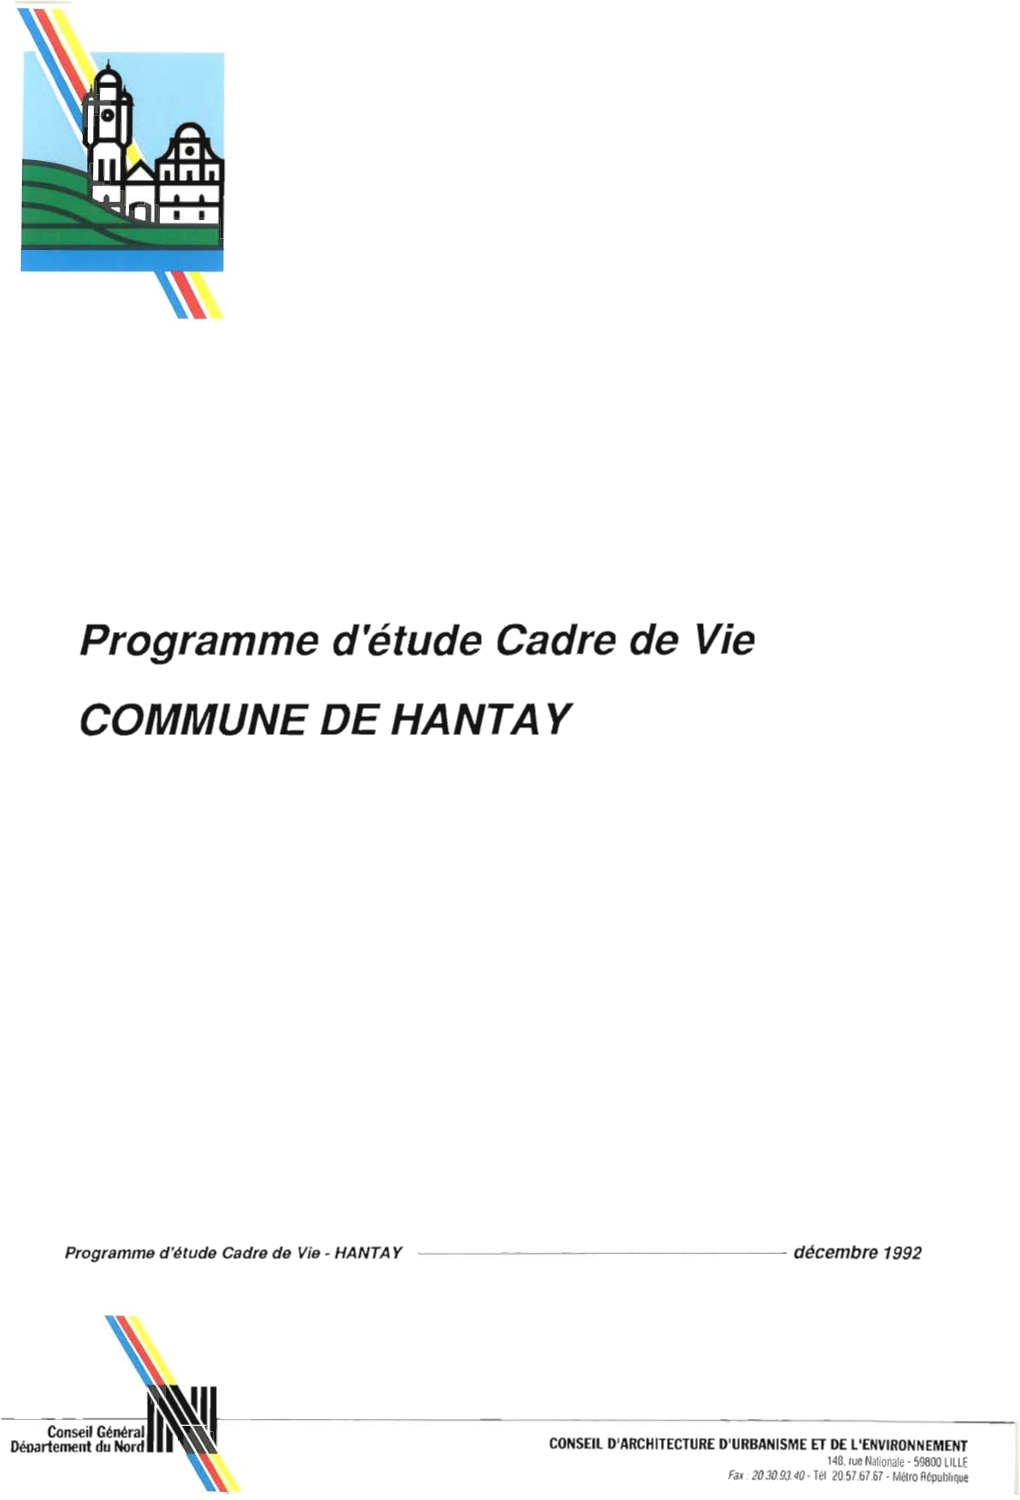 Programme D'étude Cadre De Vie, Hantay, Décembre 1992